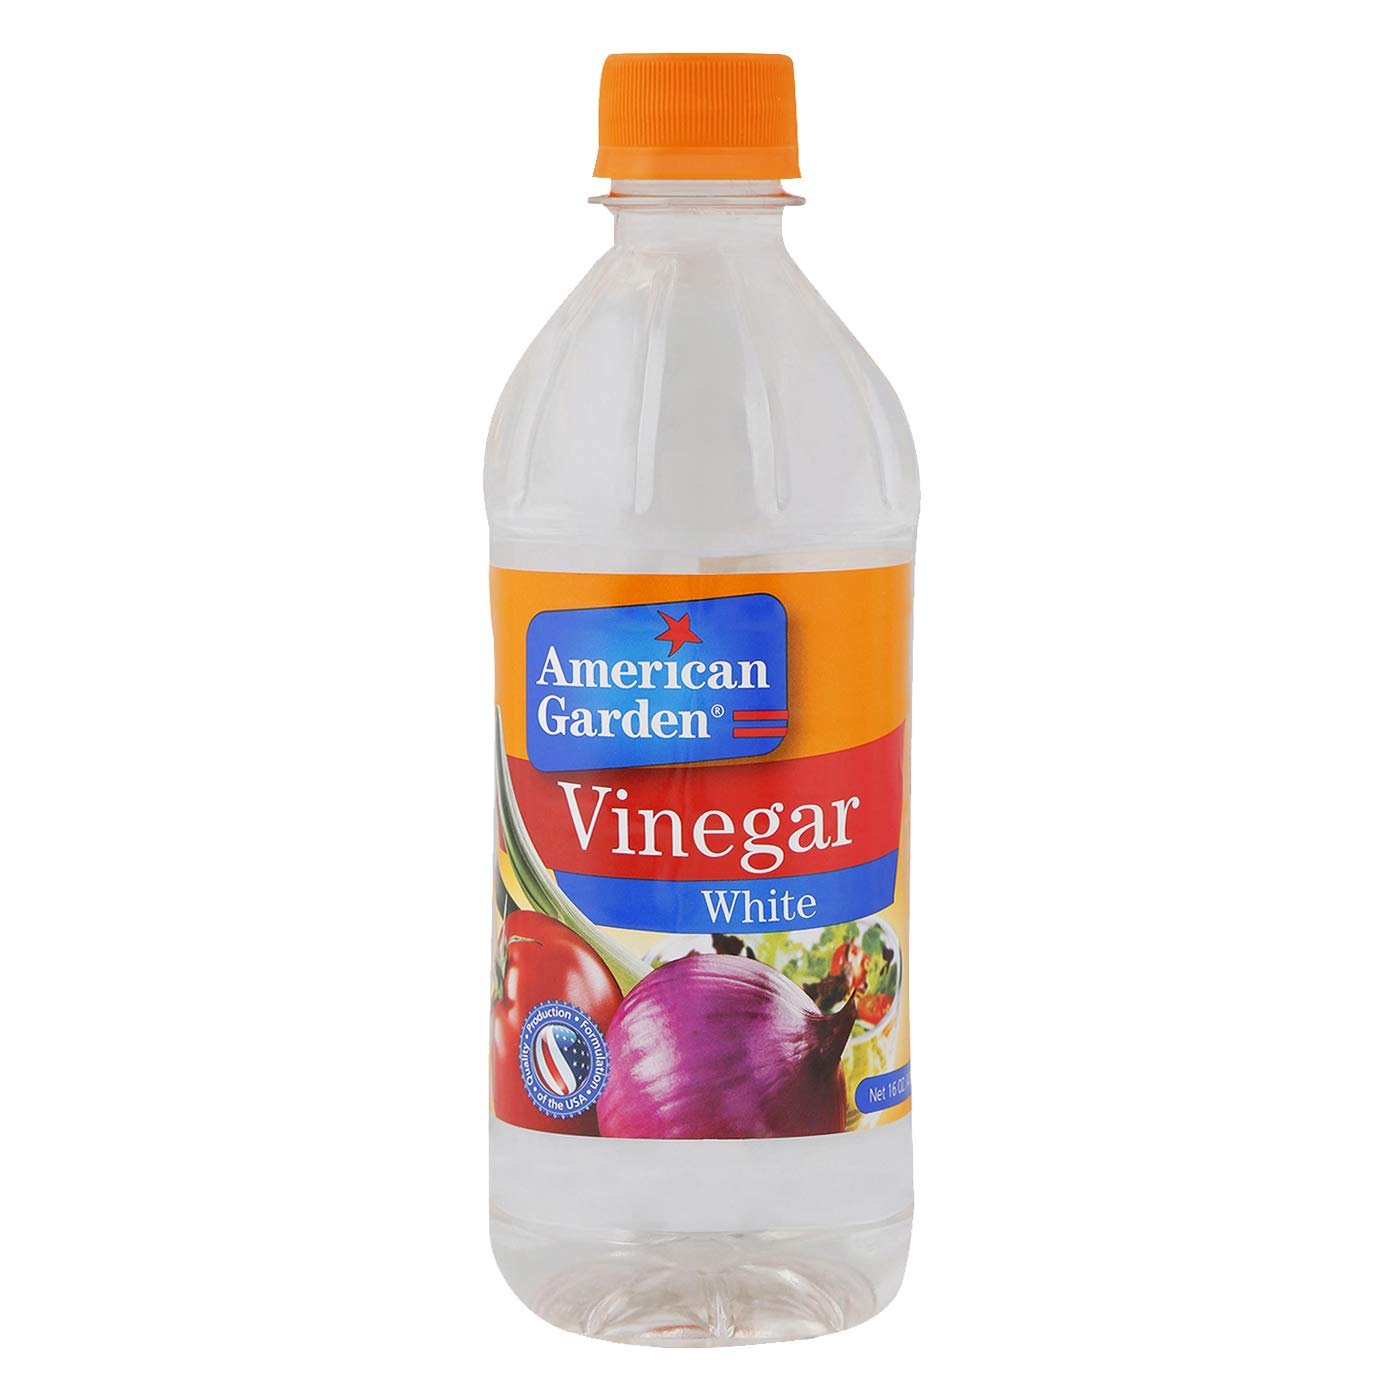 American Garden Vinegar White (Onion) (473 ml)